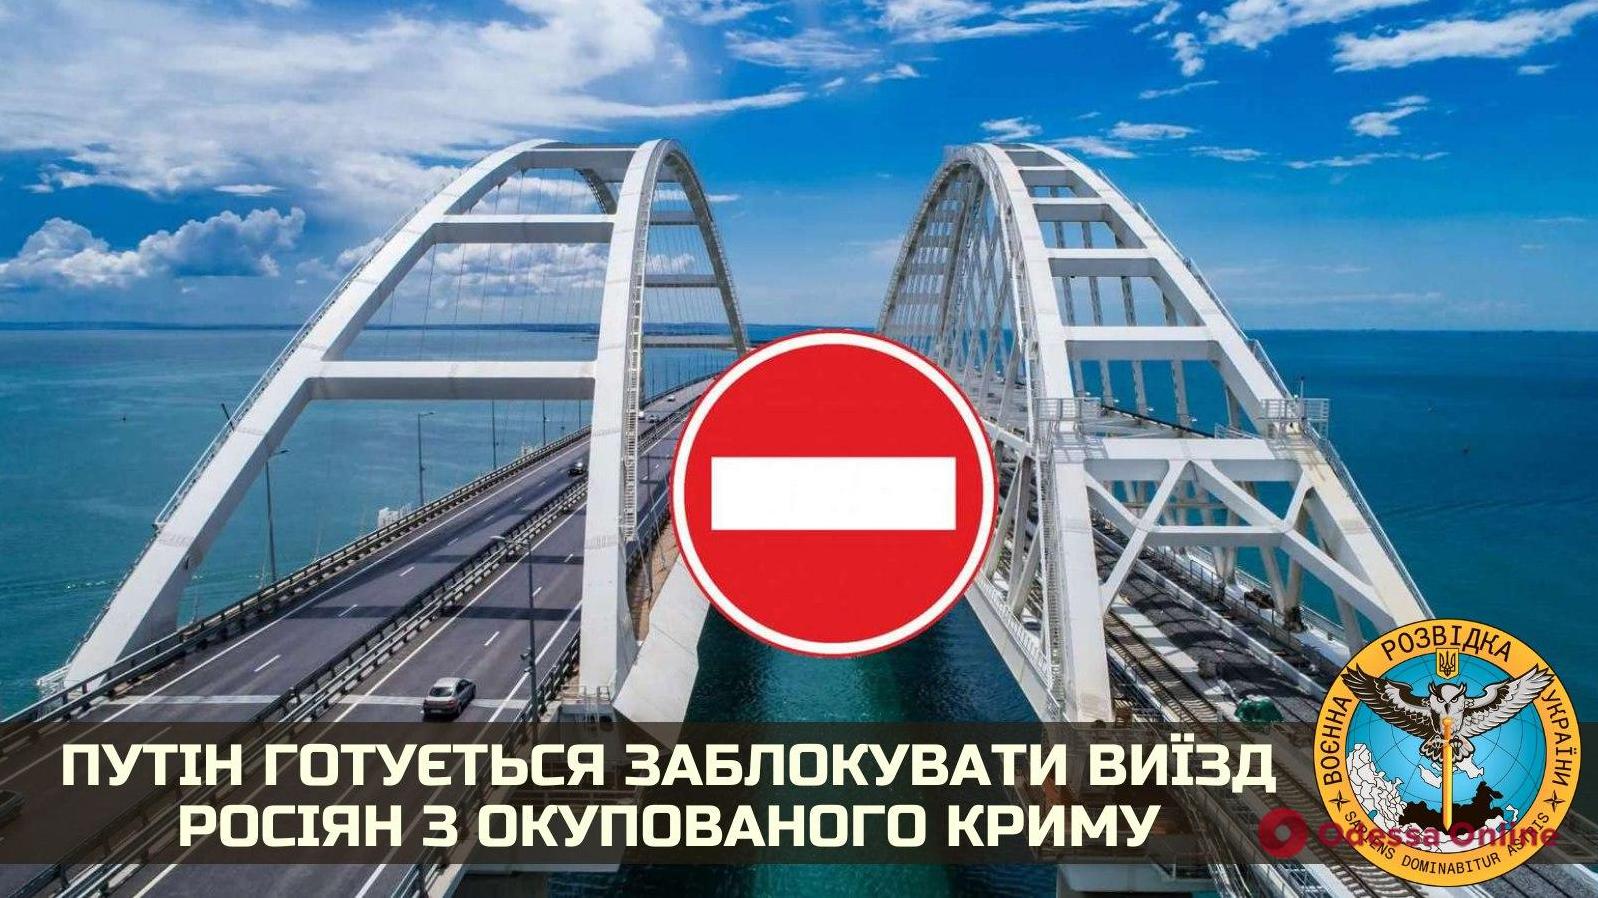 Стаття Путин готовится перекрыть Керченский мост: 600 тысяч человек окажутся в заложниках Ранкове місто. Донбас